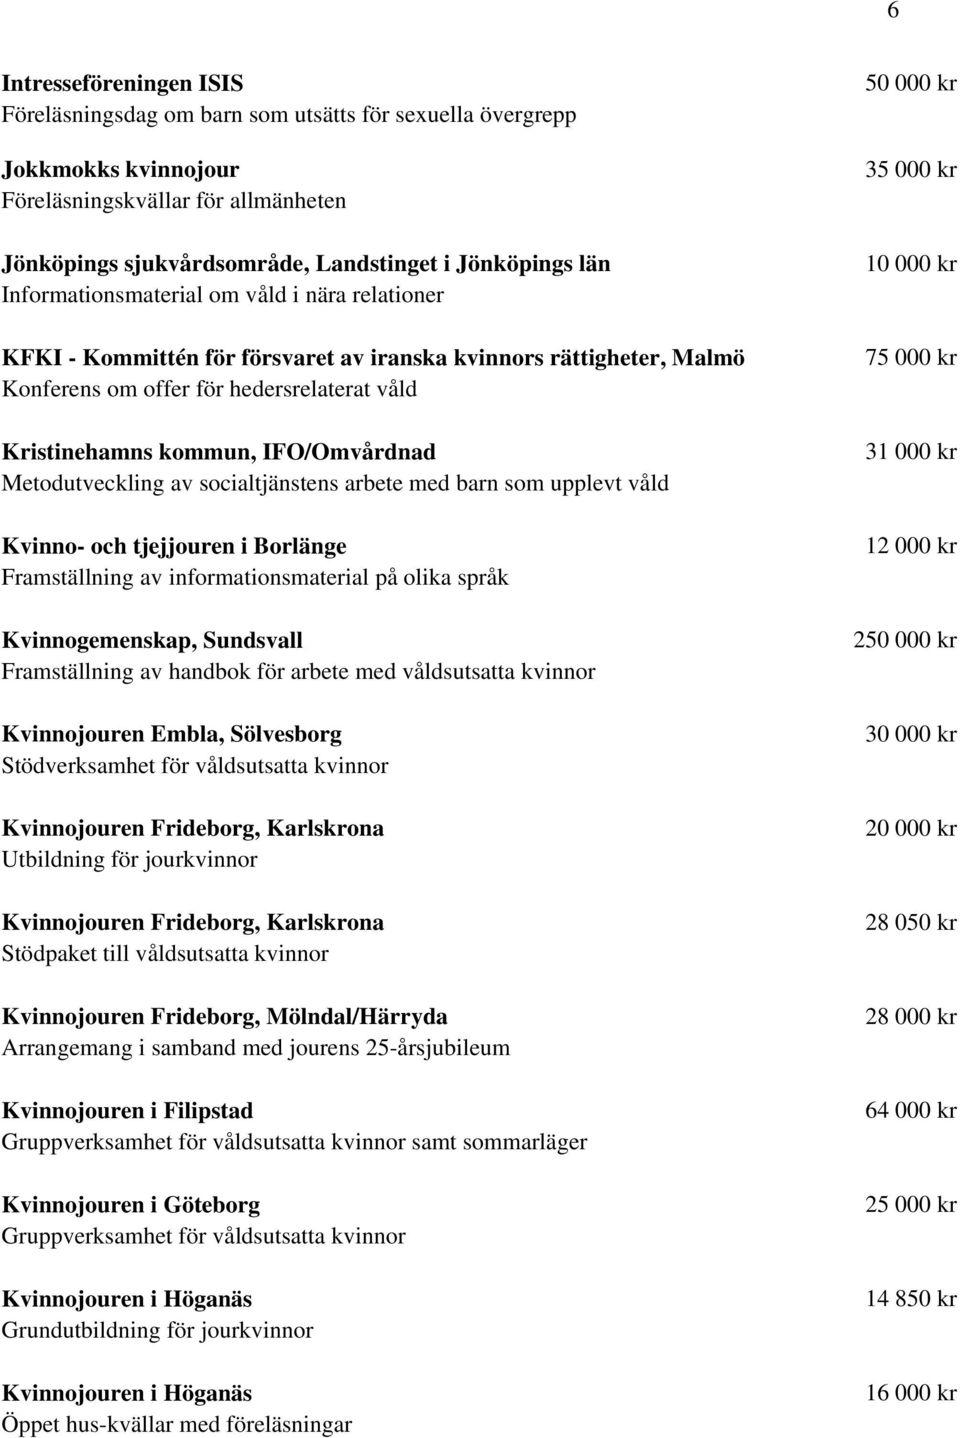 Metodutveckling av socialtjänstens arbete med barn som upplevt våld Kvinno- och tjejjouren i Borlänge på olika språk Kvinnogemenskap, Sundsvall Framställning av handbok för arbete med våldsutsatta